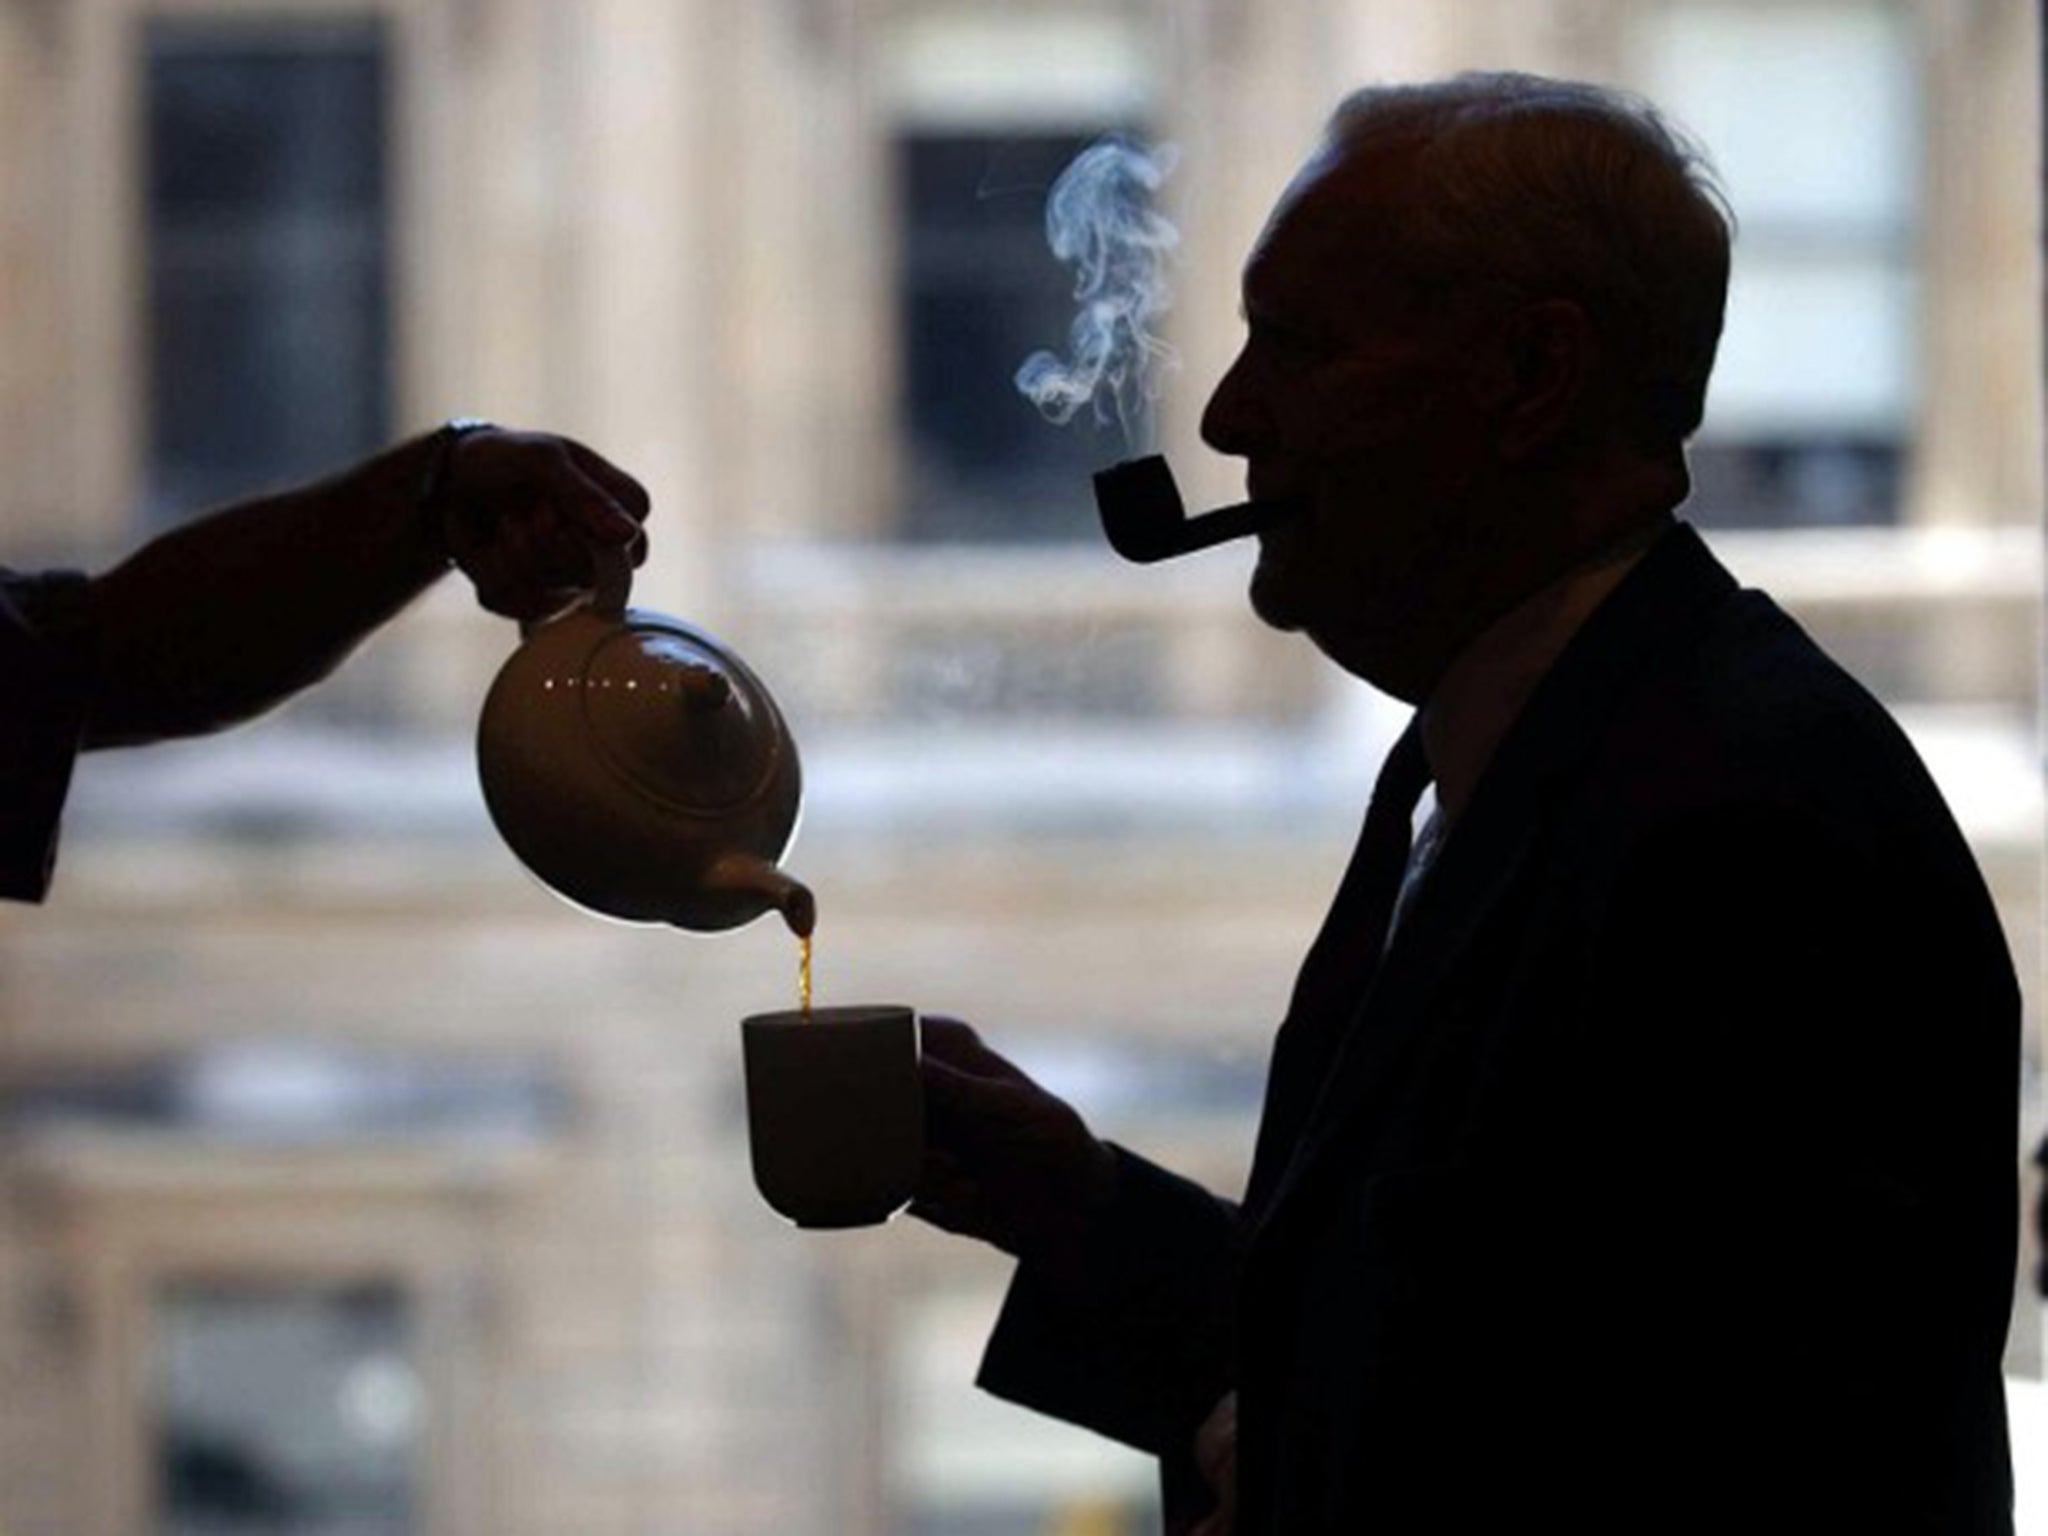 Tony Benn enjoying a cup of tea